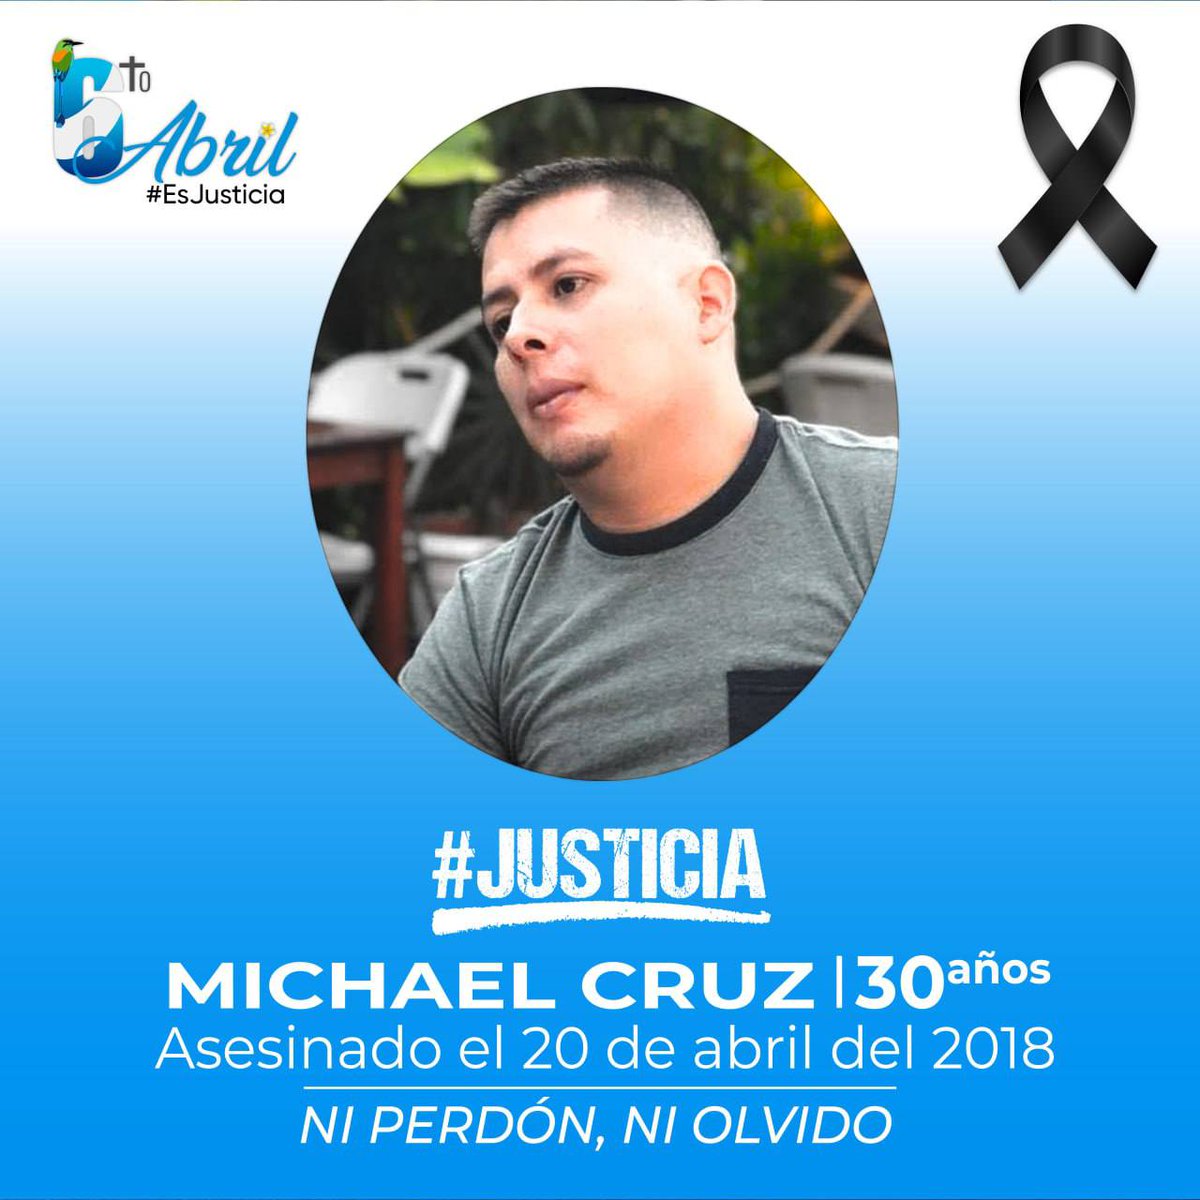 #AbrilEsJusticia para todas las víctimas y asesinados por la dictadura Ortega-Murillo, exigimos Justicia para Michael Humberto Cruz Sánchez. ¡Ni perdón, ni olvido! #6toAbril #NiPerdónNiOlvido